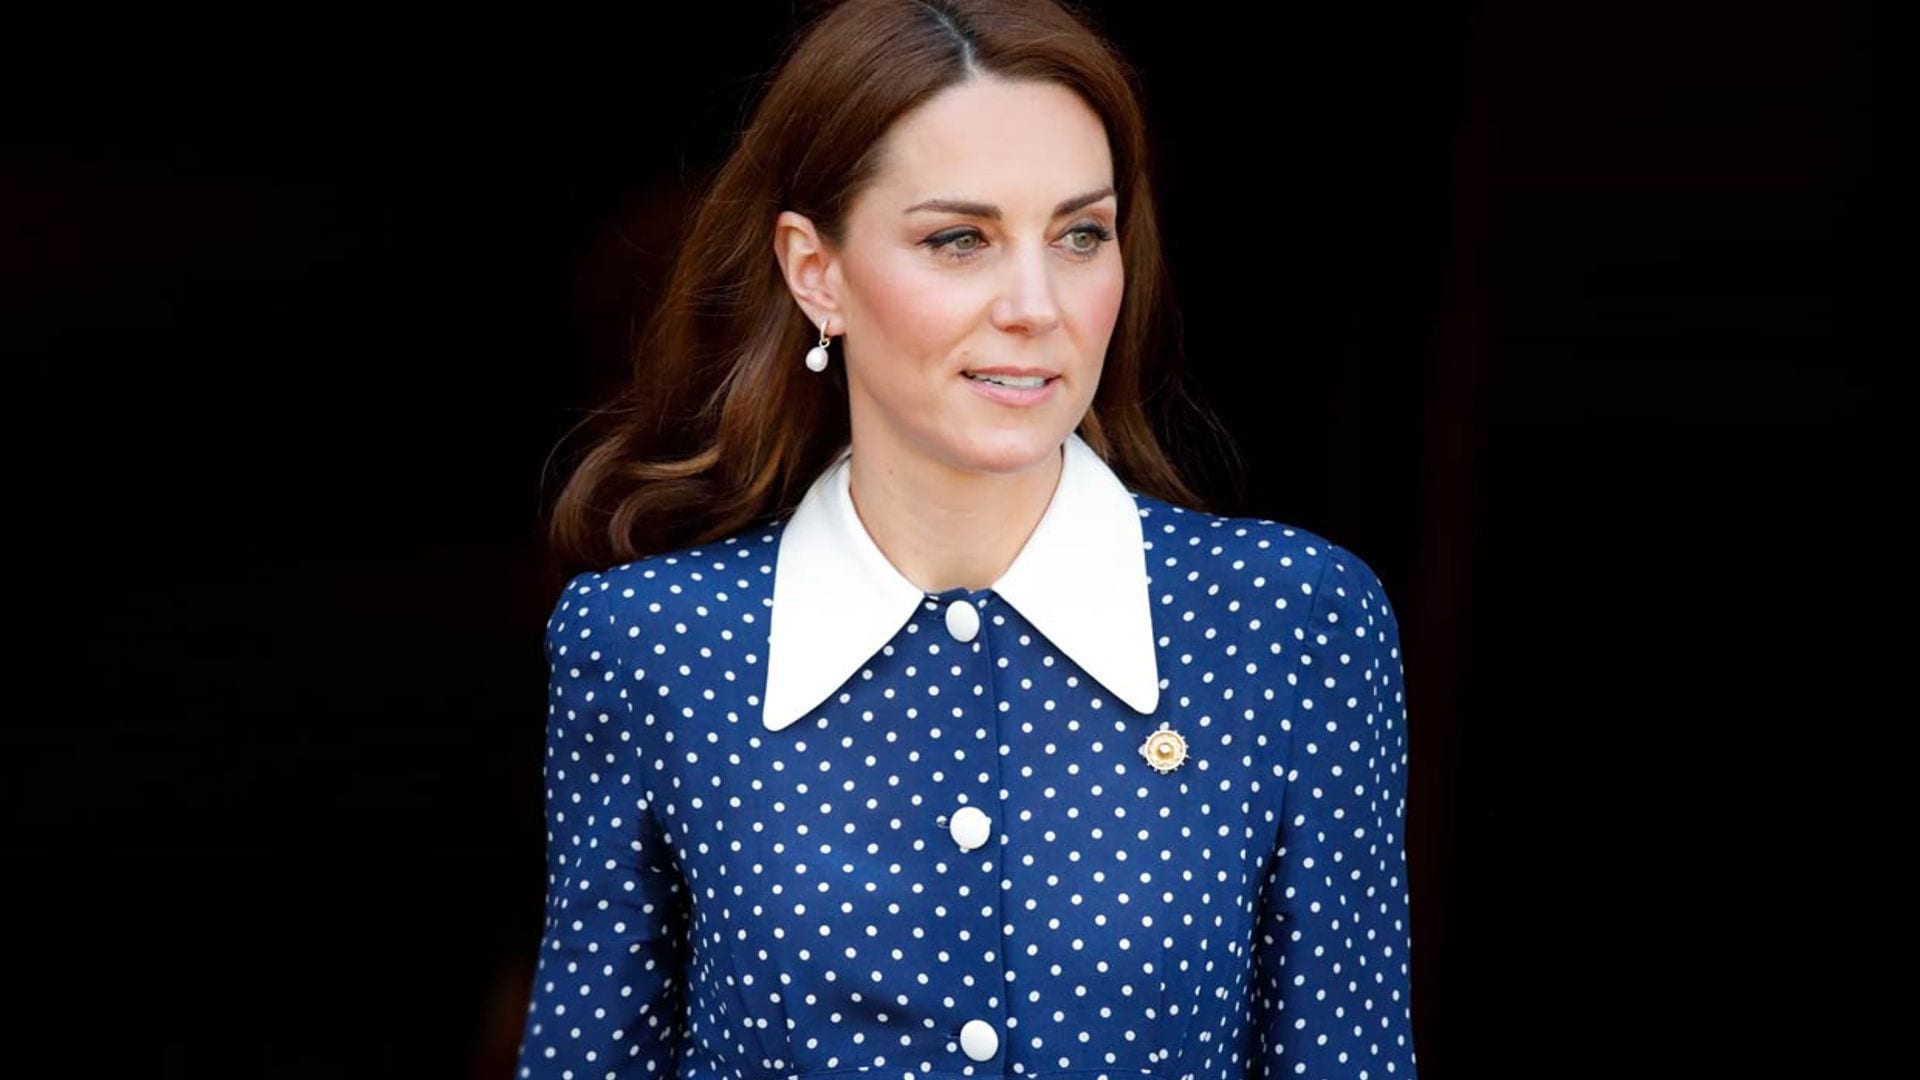 ¿Vestido o camisa? El misterioso look de Kate Middleton que despista a sus fans